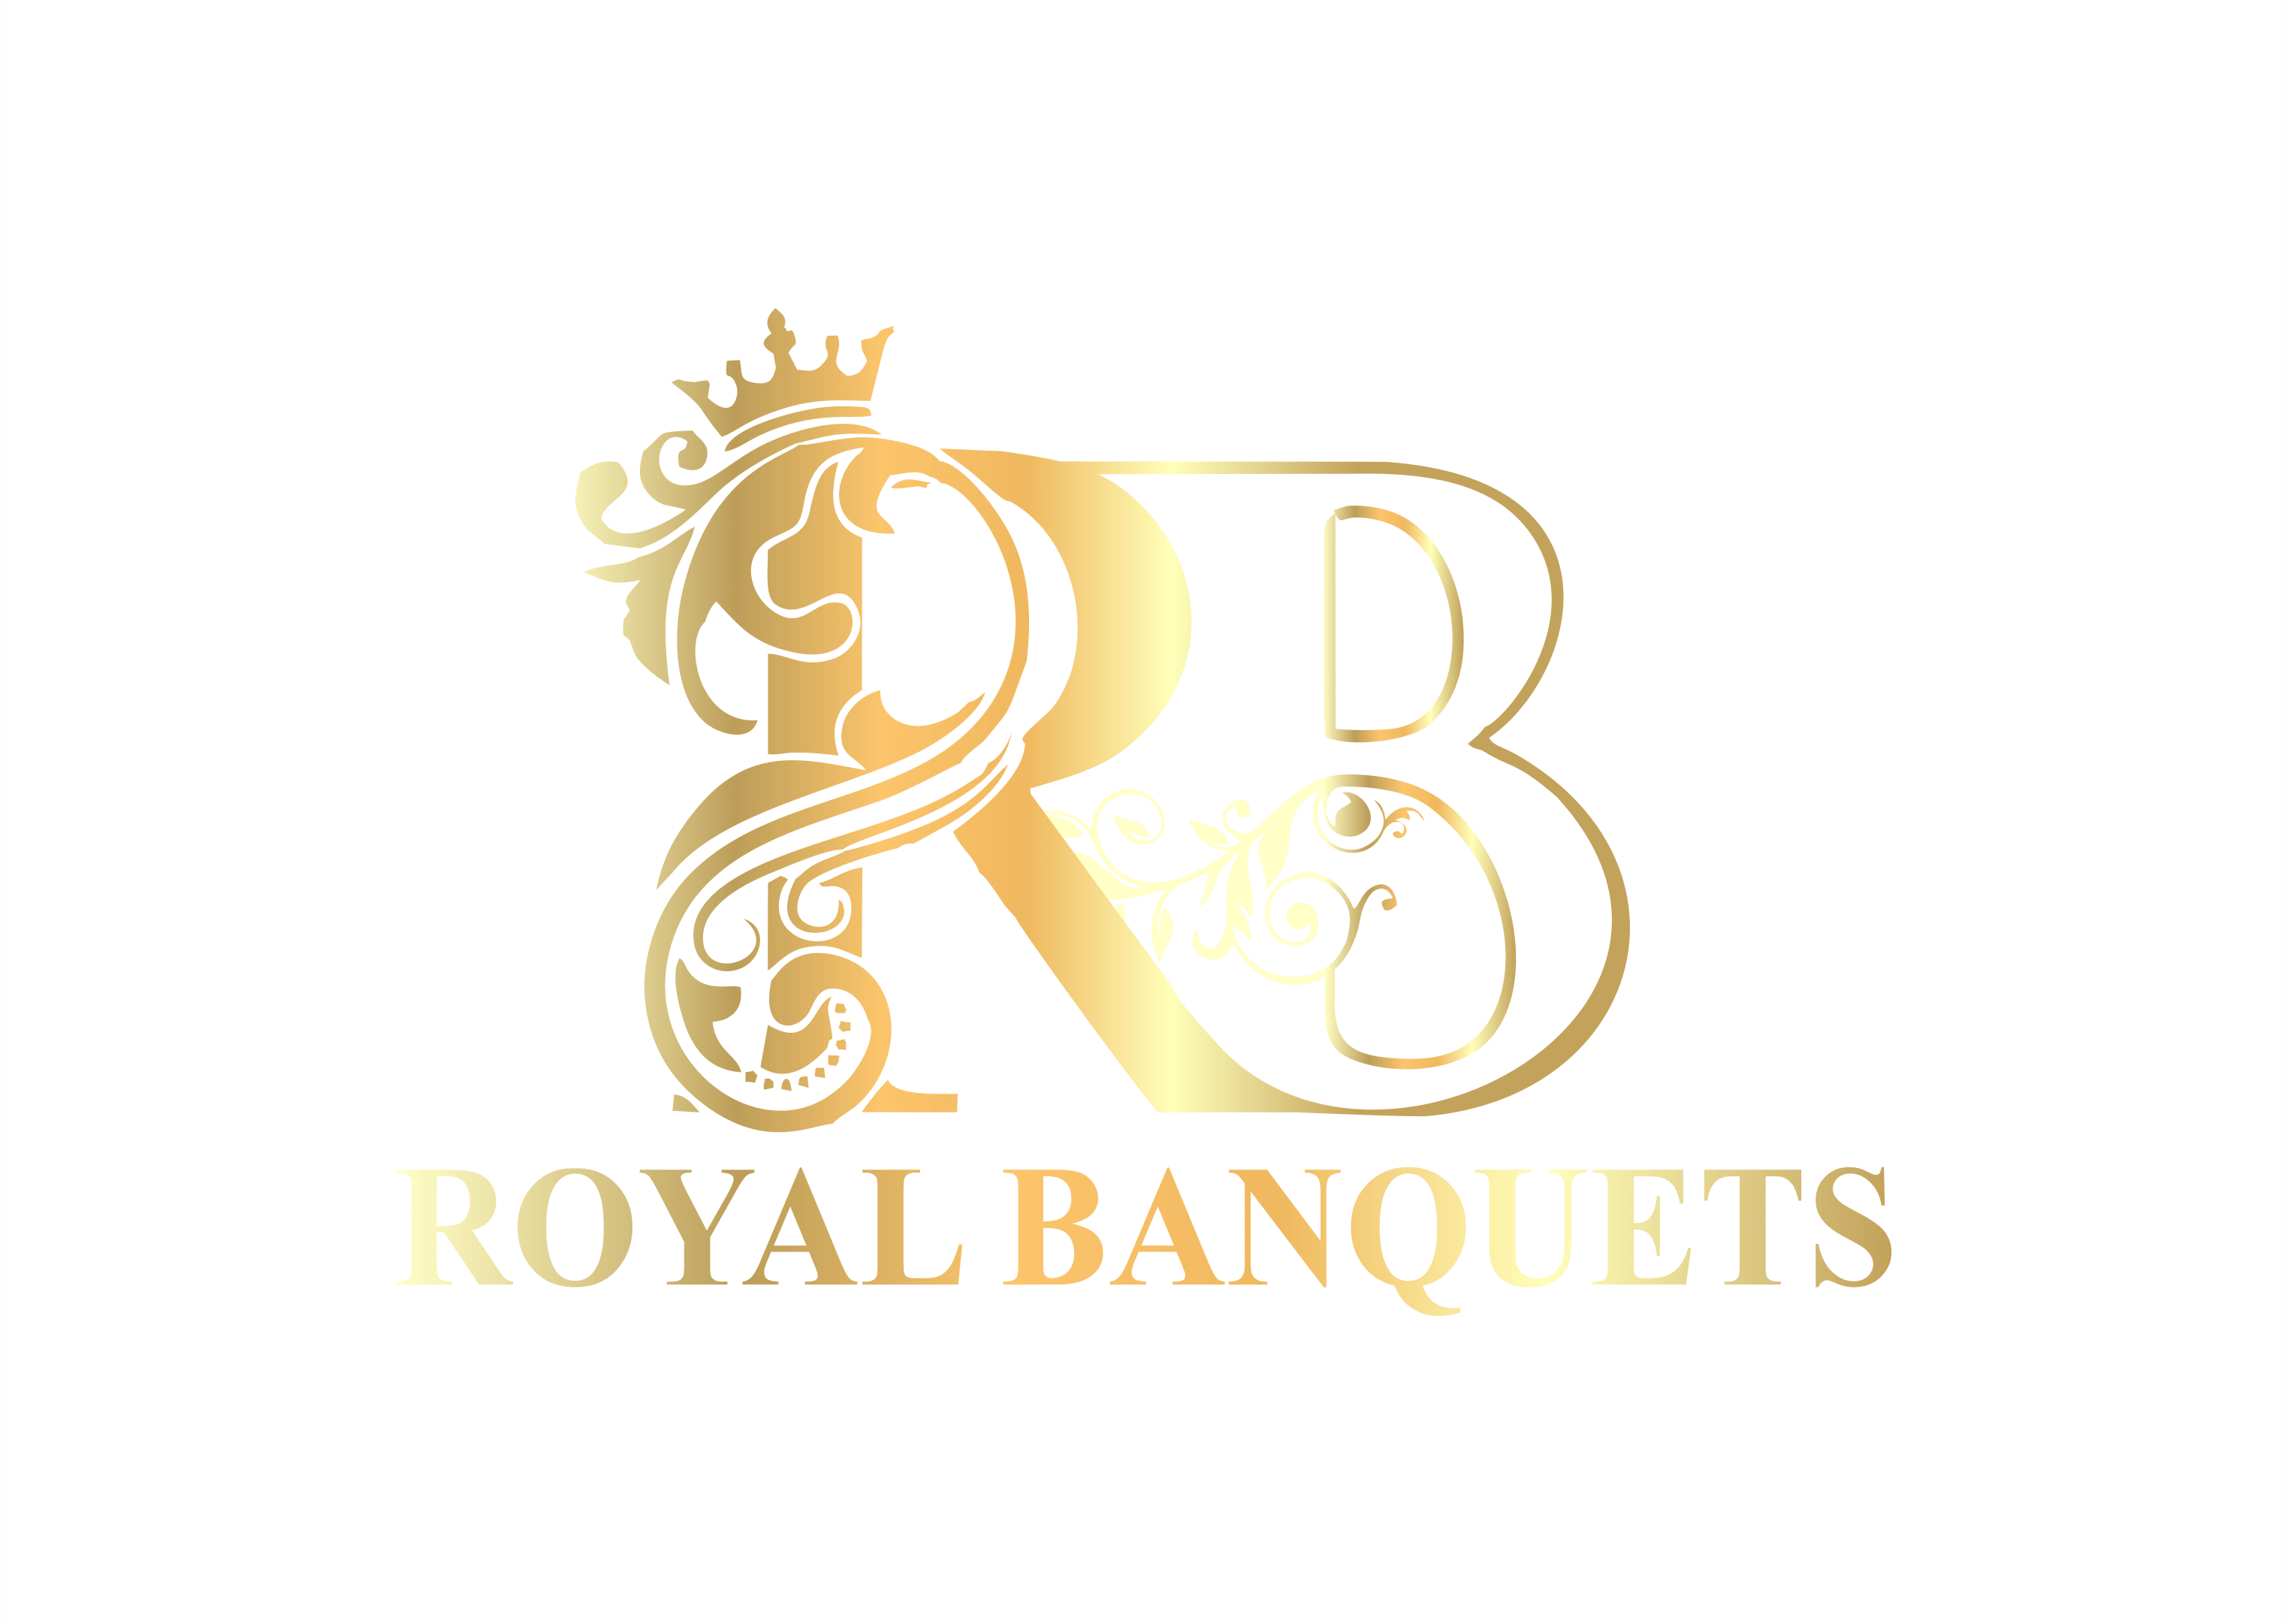 Royal Banquets